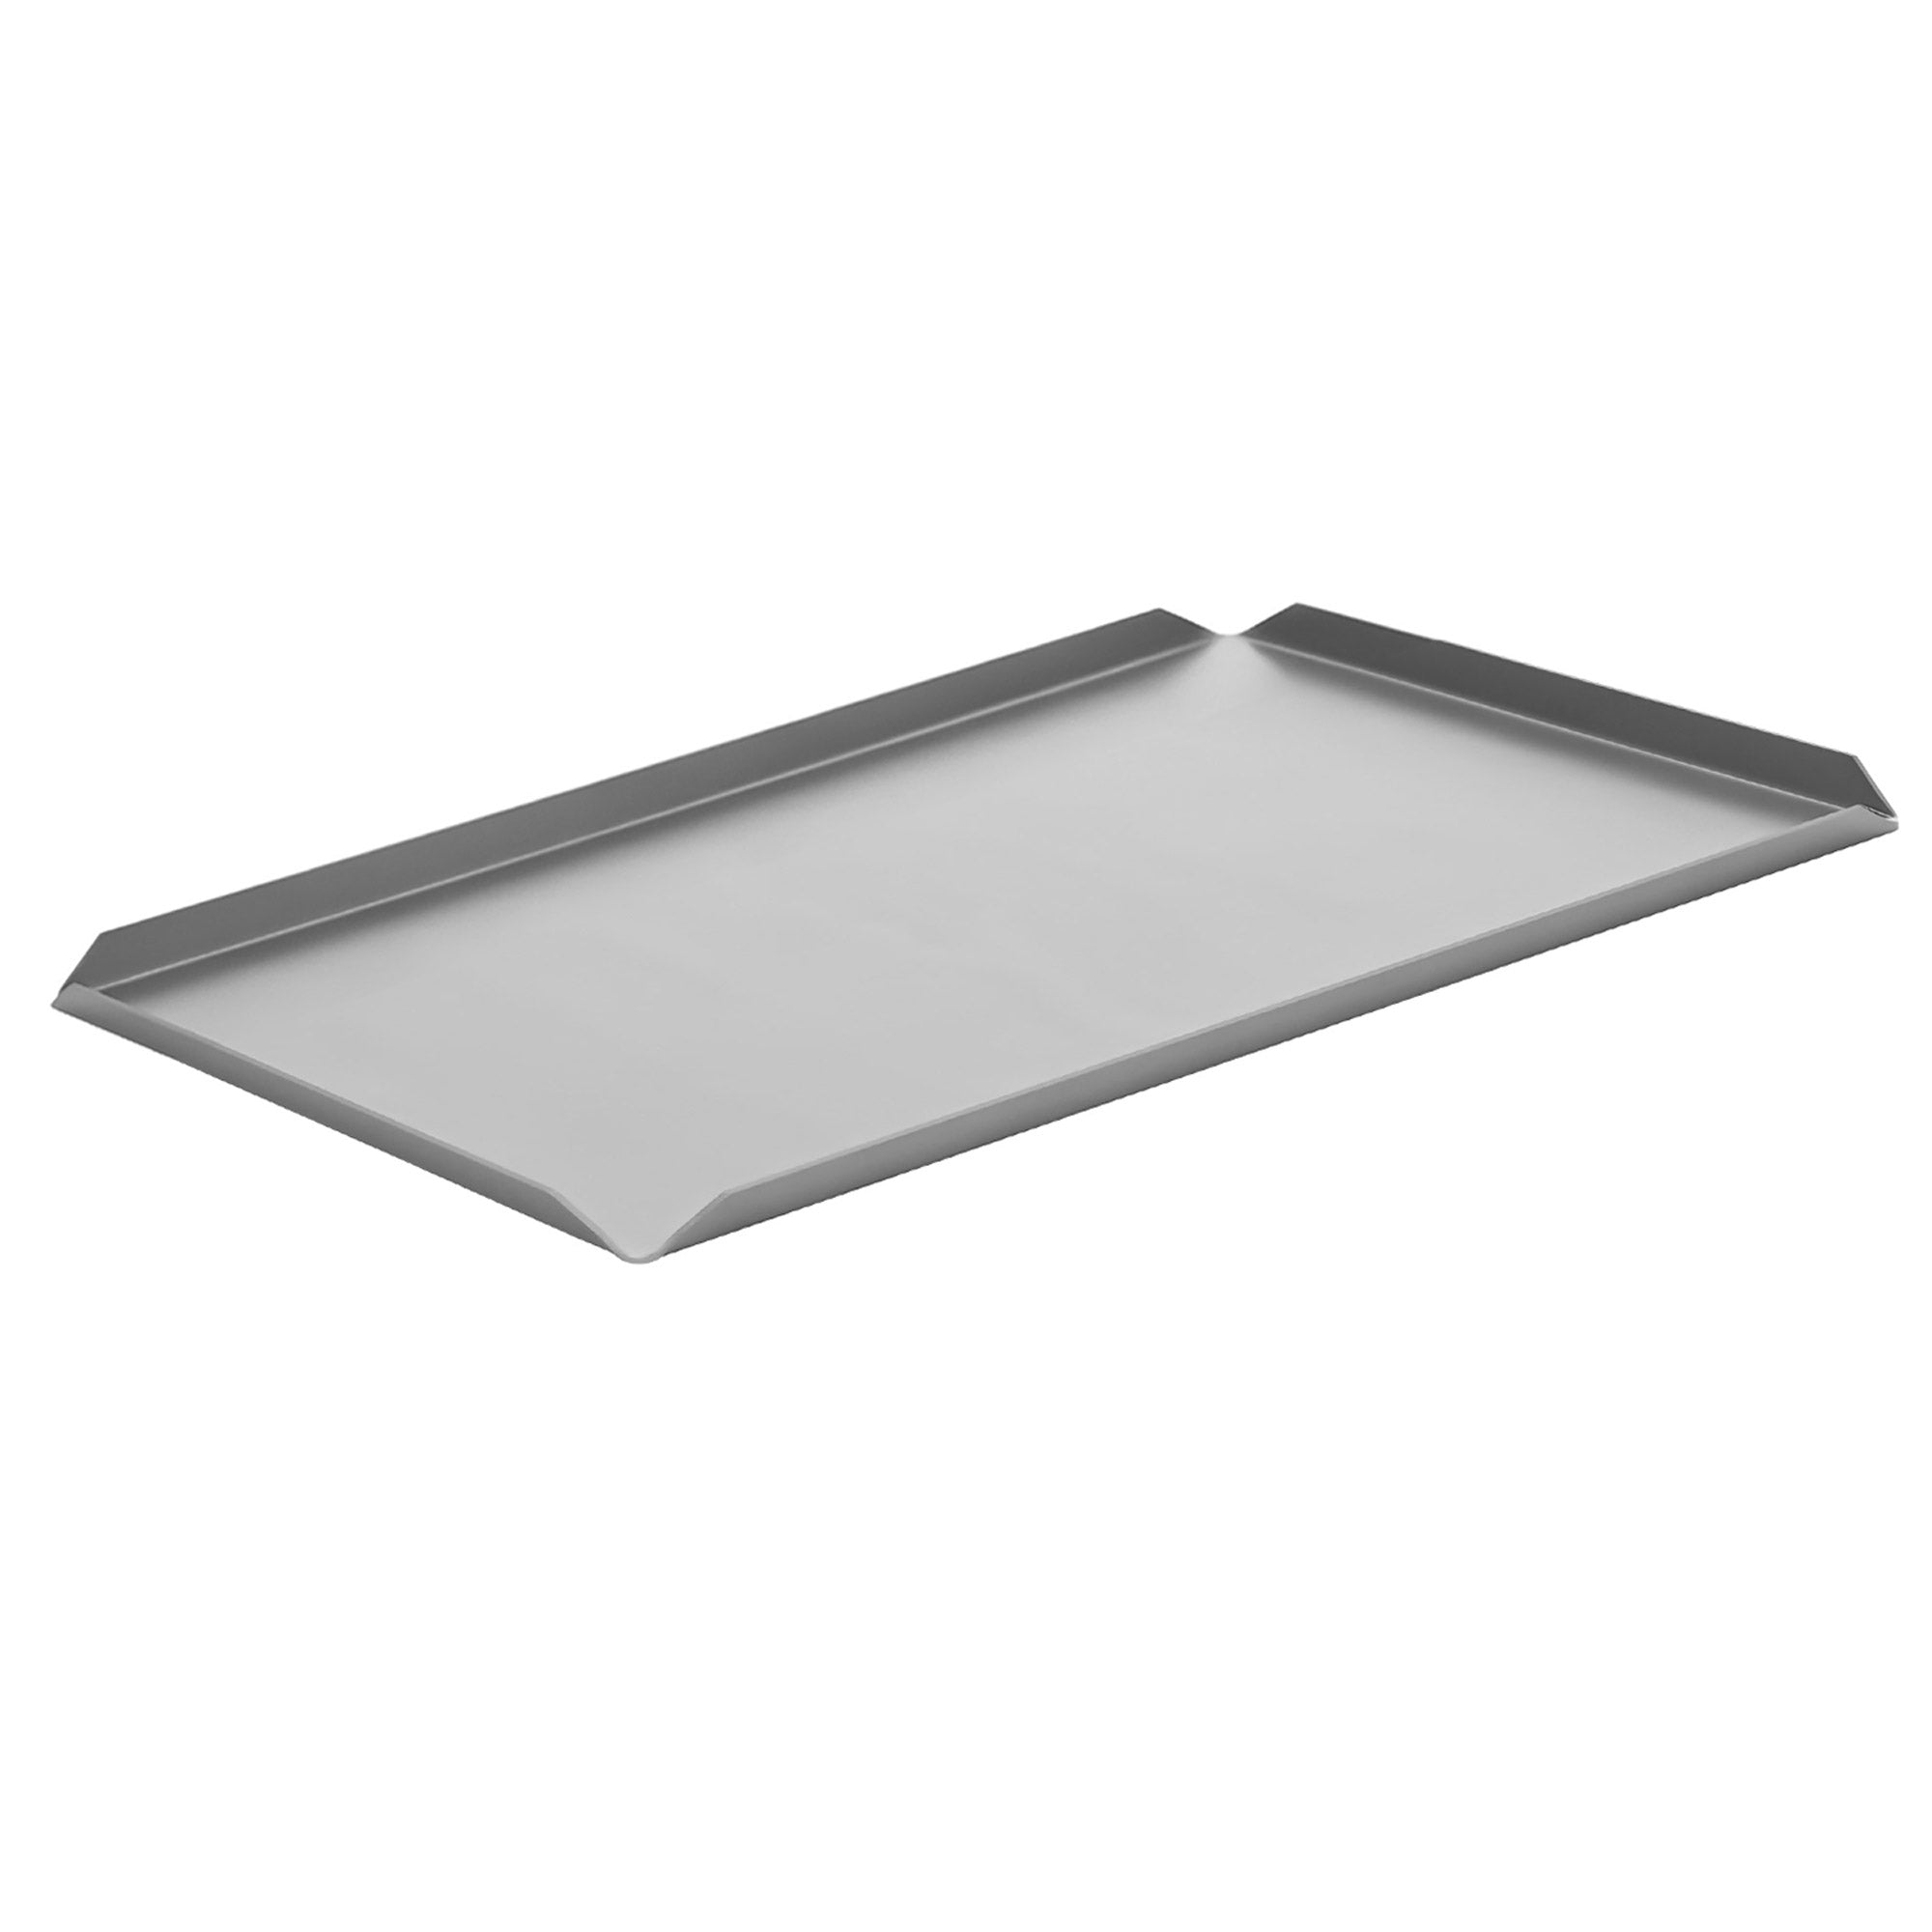 (5 бр.) Алуминиева табелка за сладкарски изделия и презентации - 600 x 100 x 10 mm - алуминий